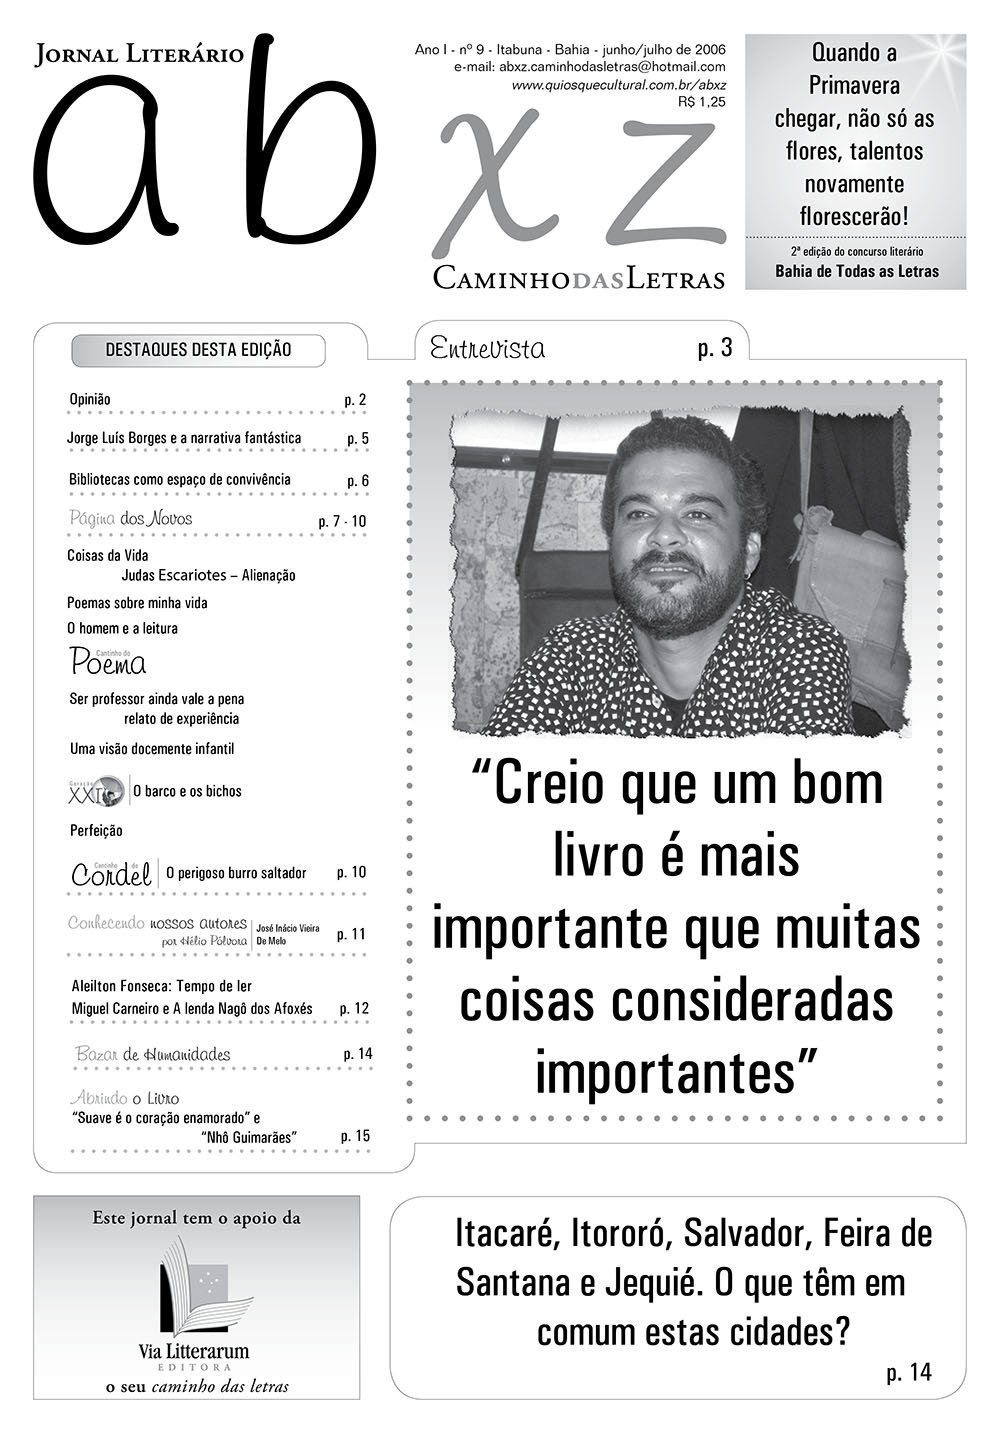 Jornal abxz - Edição 09